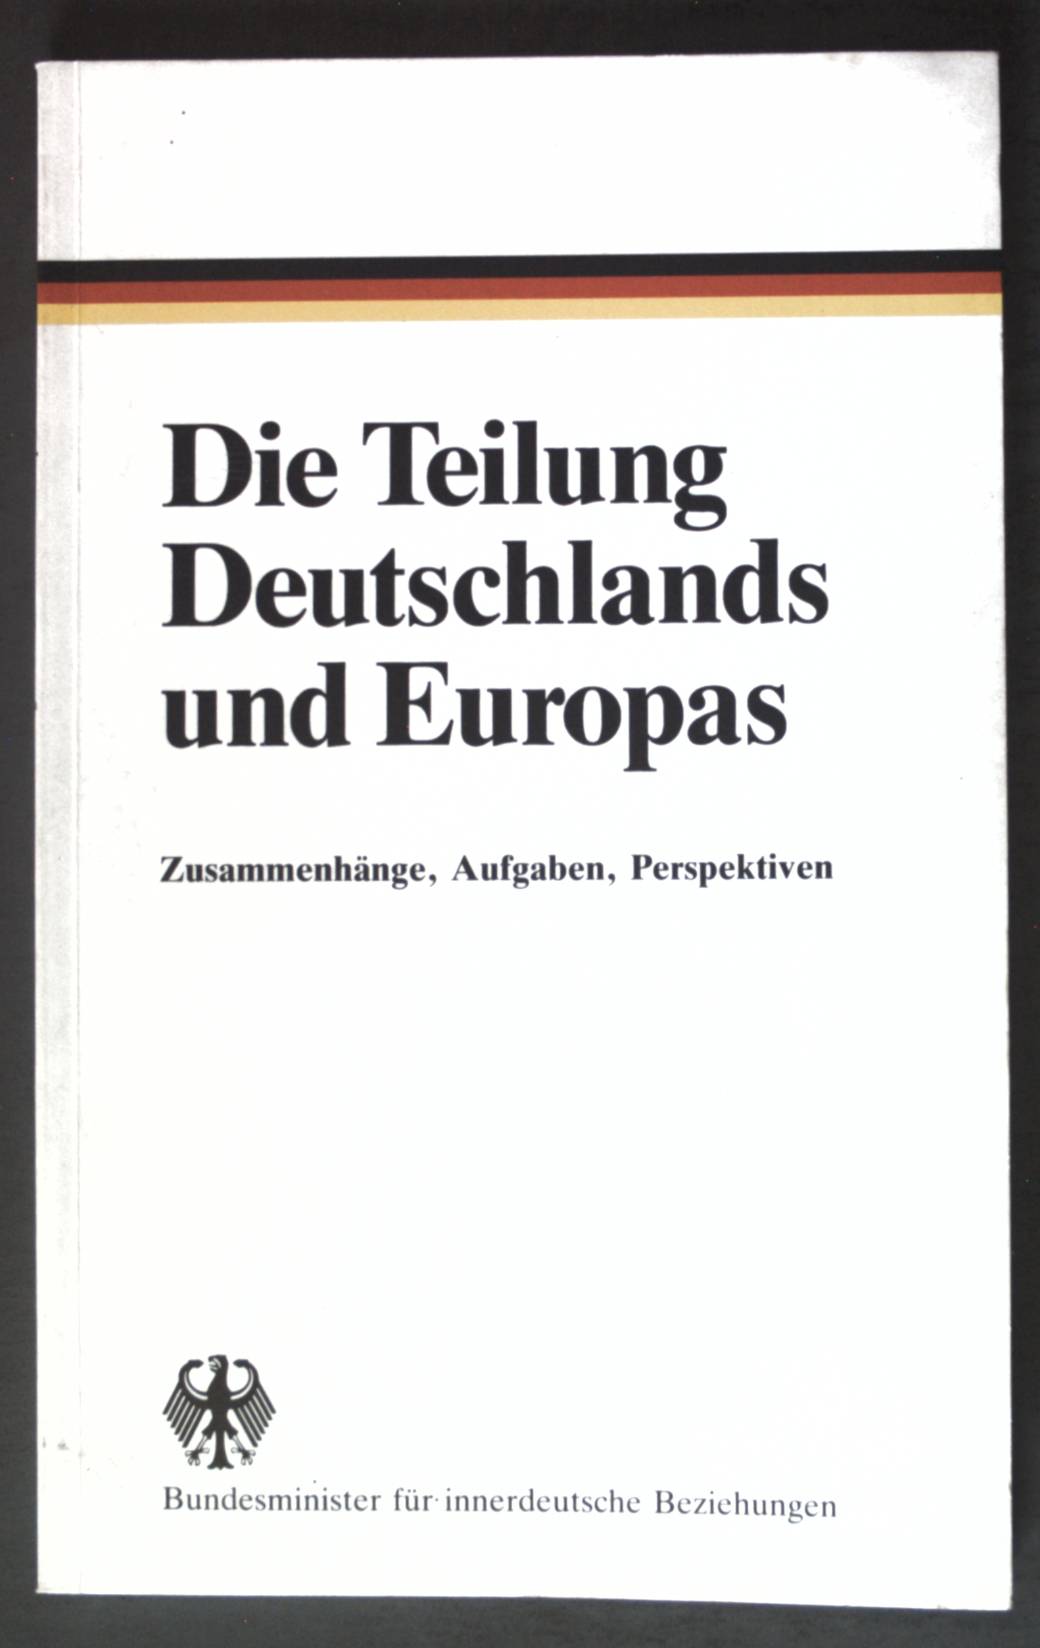 Die Teilung Deutschlands und Europas: Zusammenhänge, Aufgaben, Perspektiven